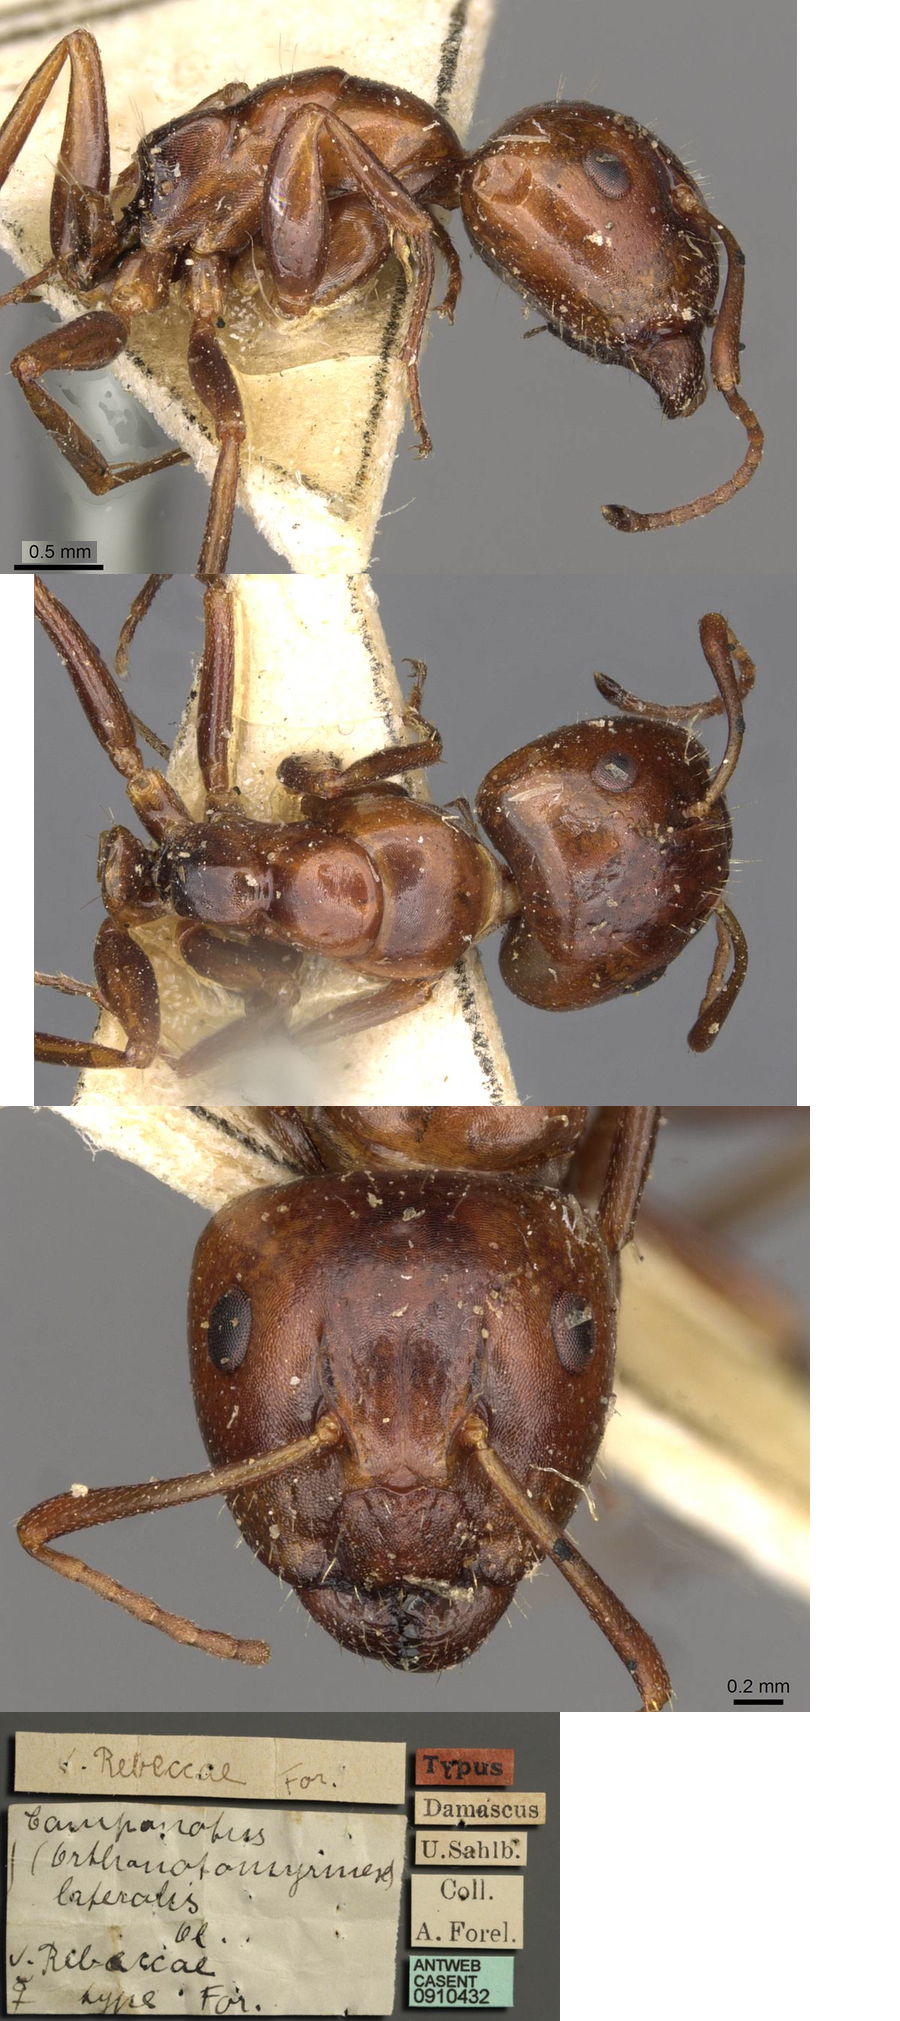 Camponotus rebeccae major